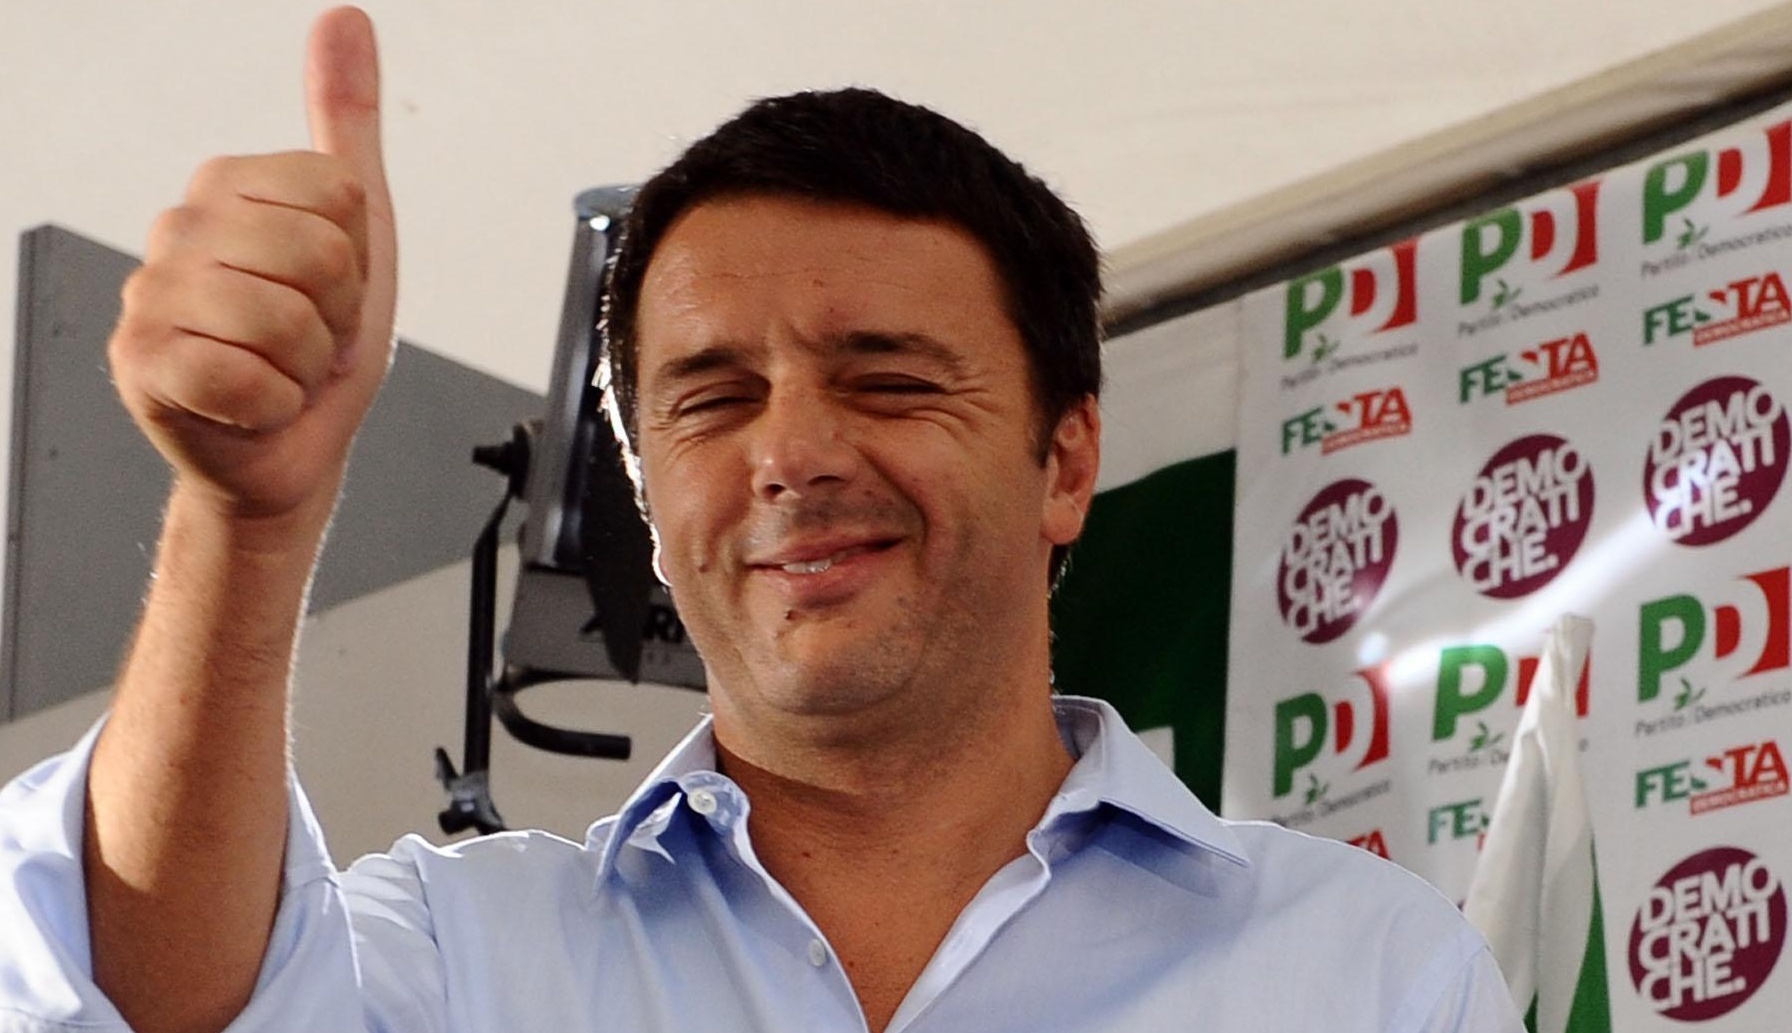 Così Matteo Renzi ti taglia le tasse sulla busta paga mercoledì